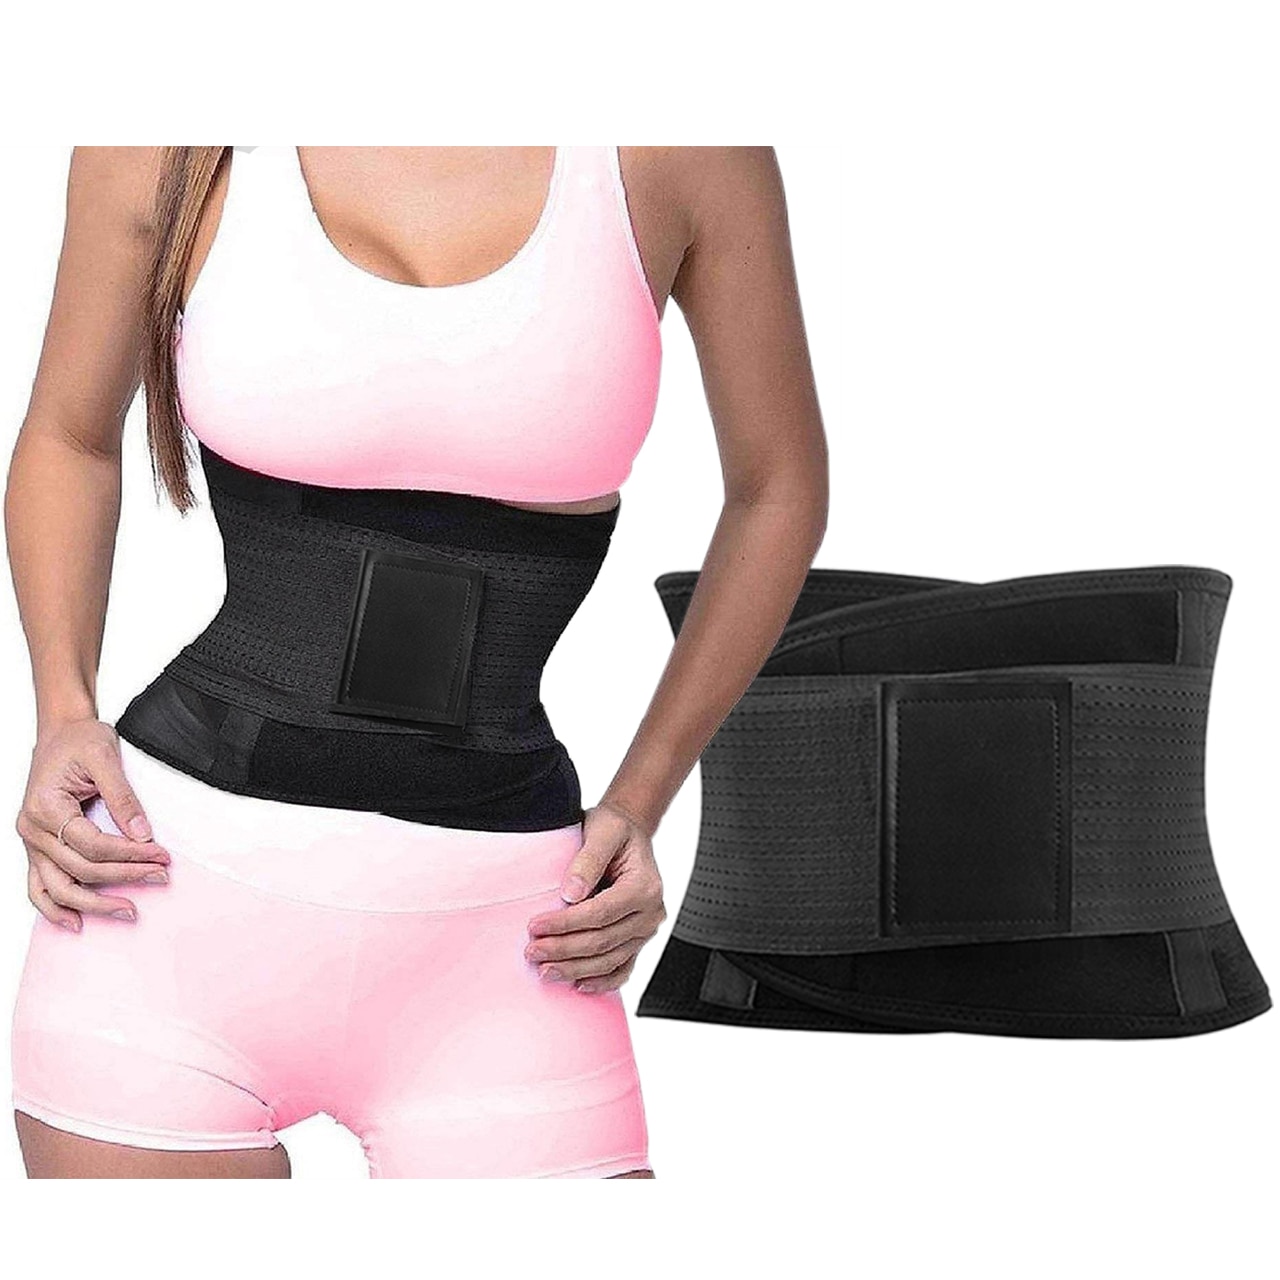 Corset modelator de slabit pentru femei, abdomen si talie | marcelpavel.ro